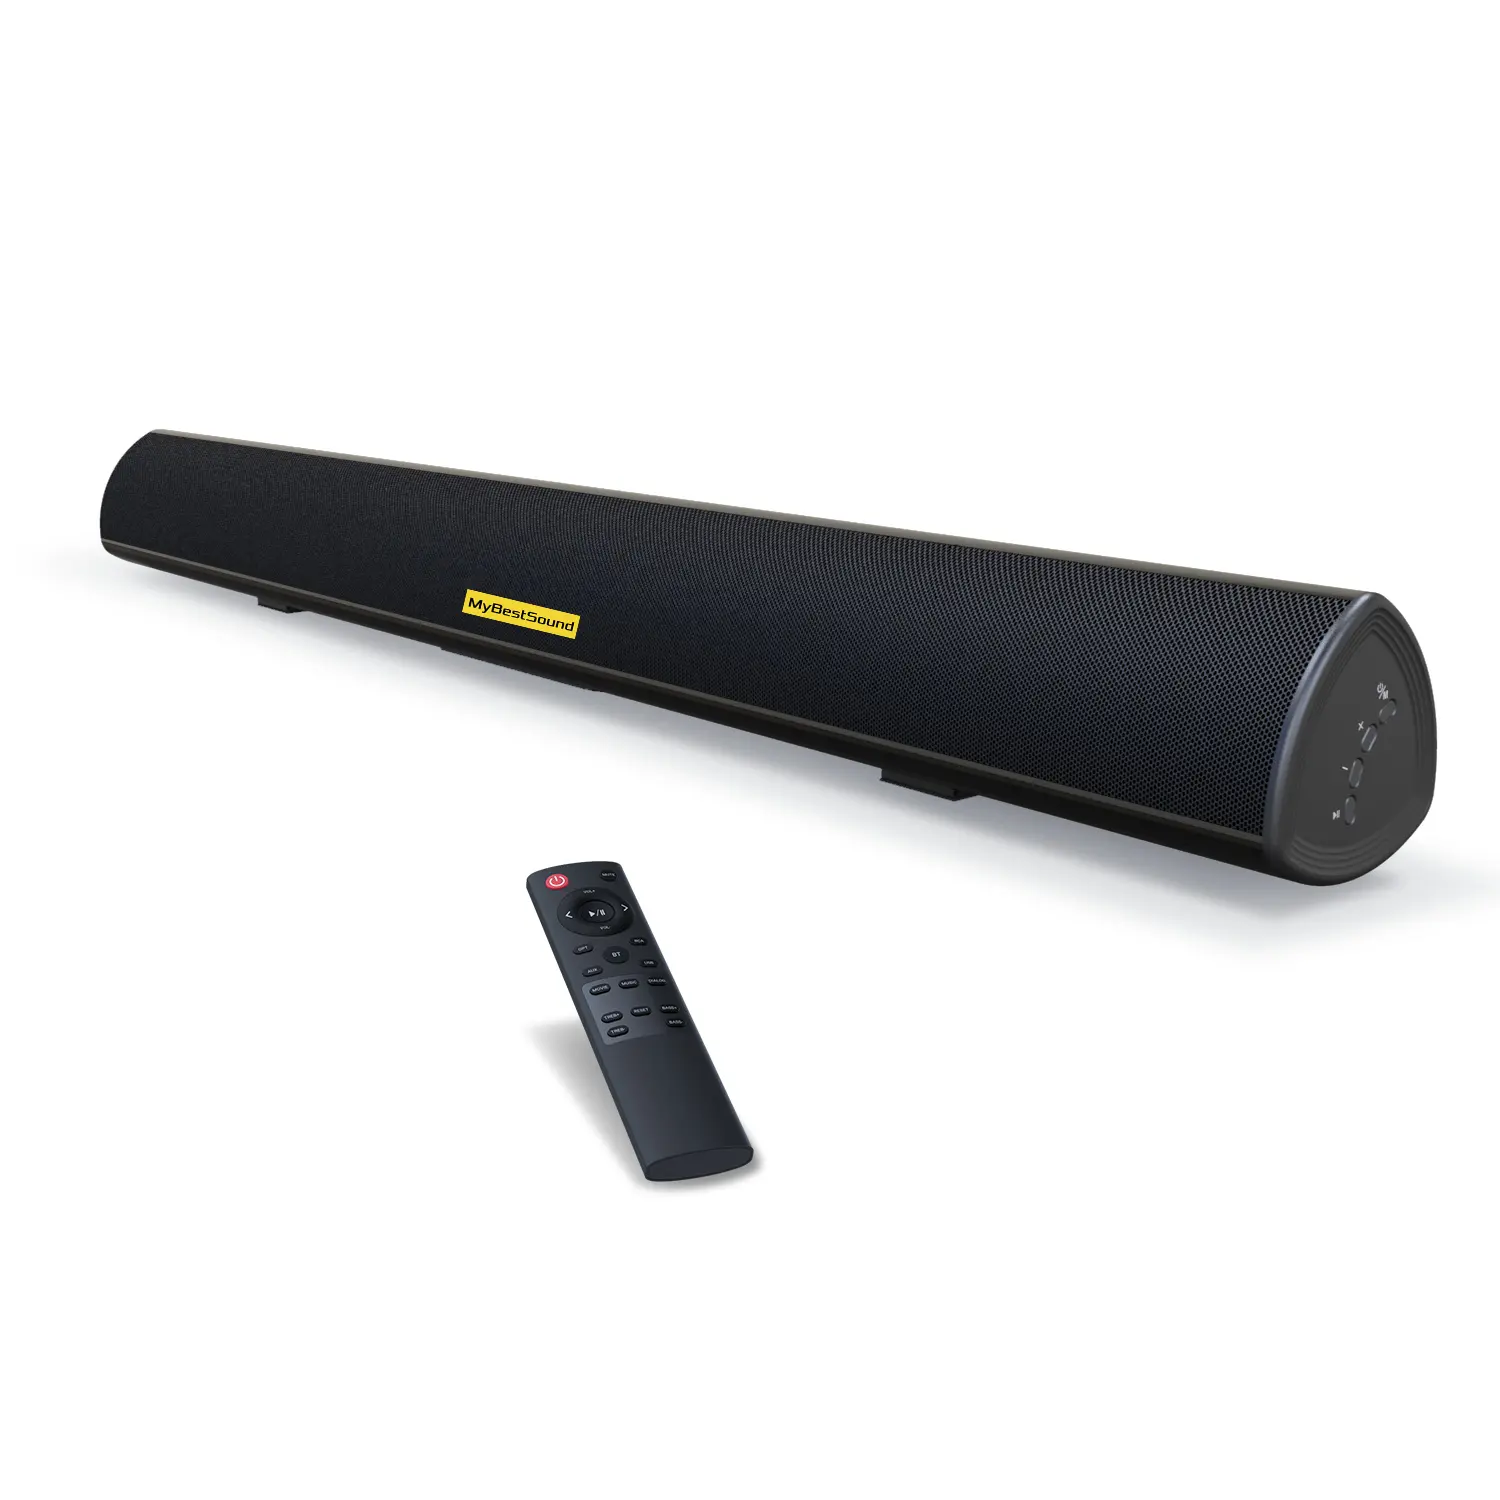 S9920 2.0 suara bar nirkabel 40 inch home theater subwoofer di dinding speaker untuk home theater